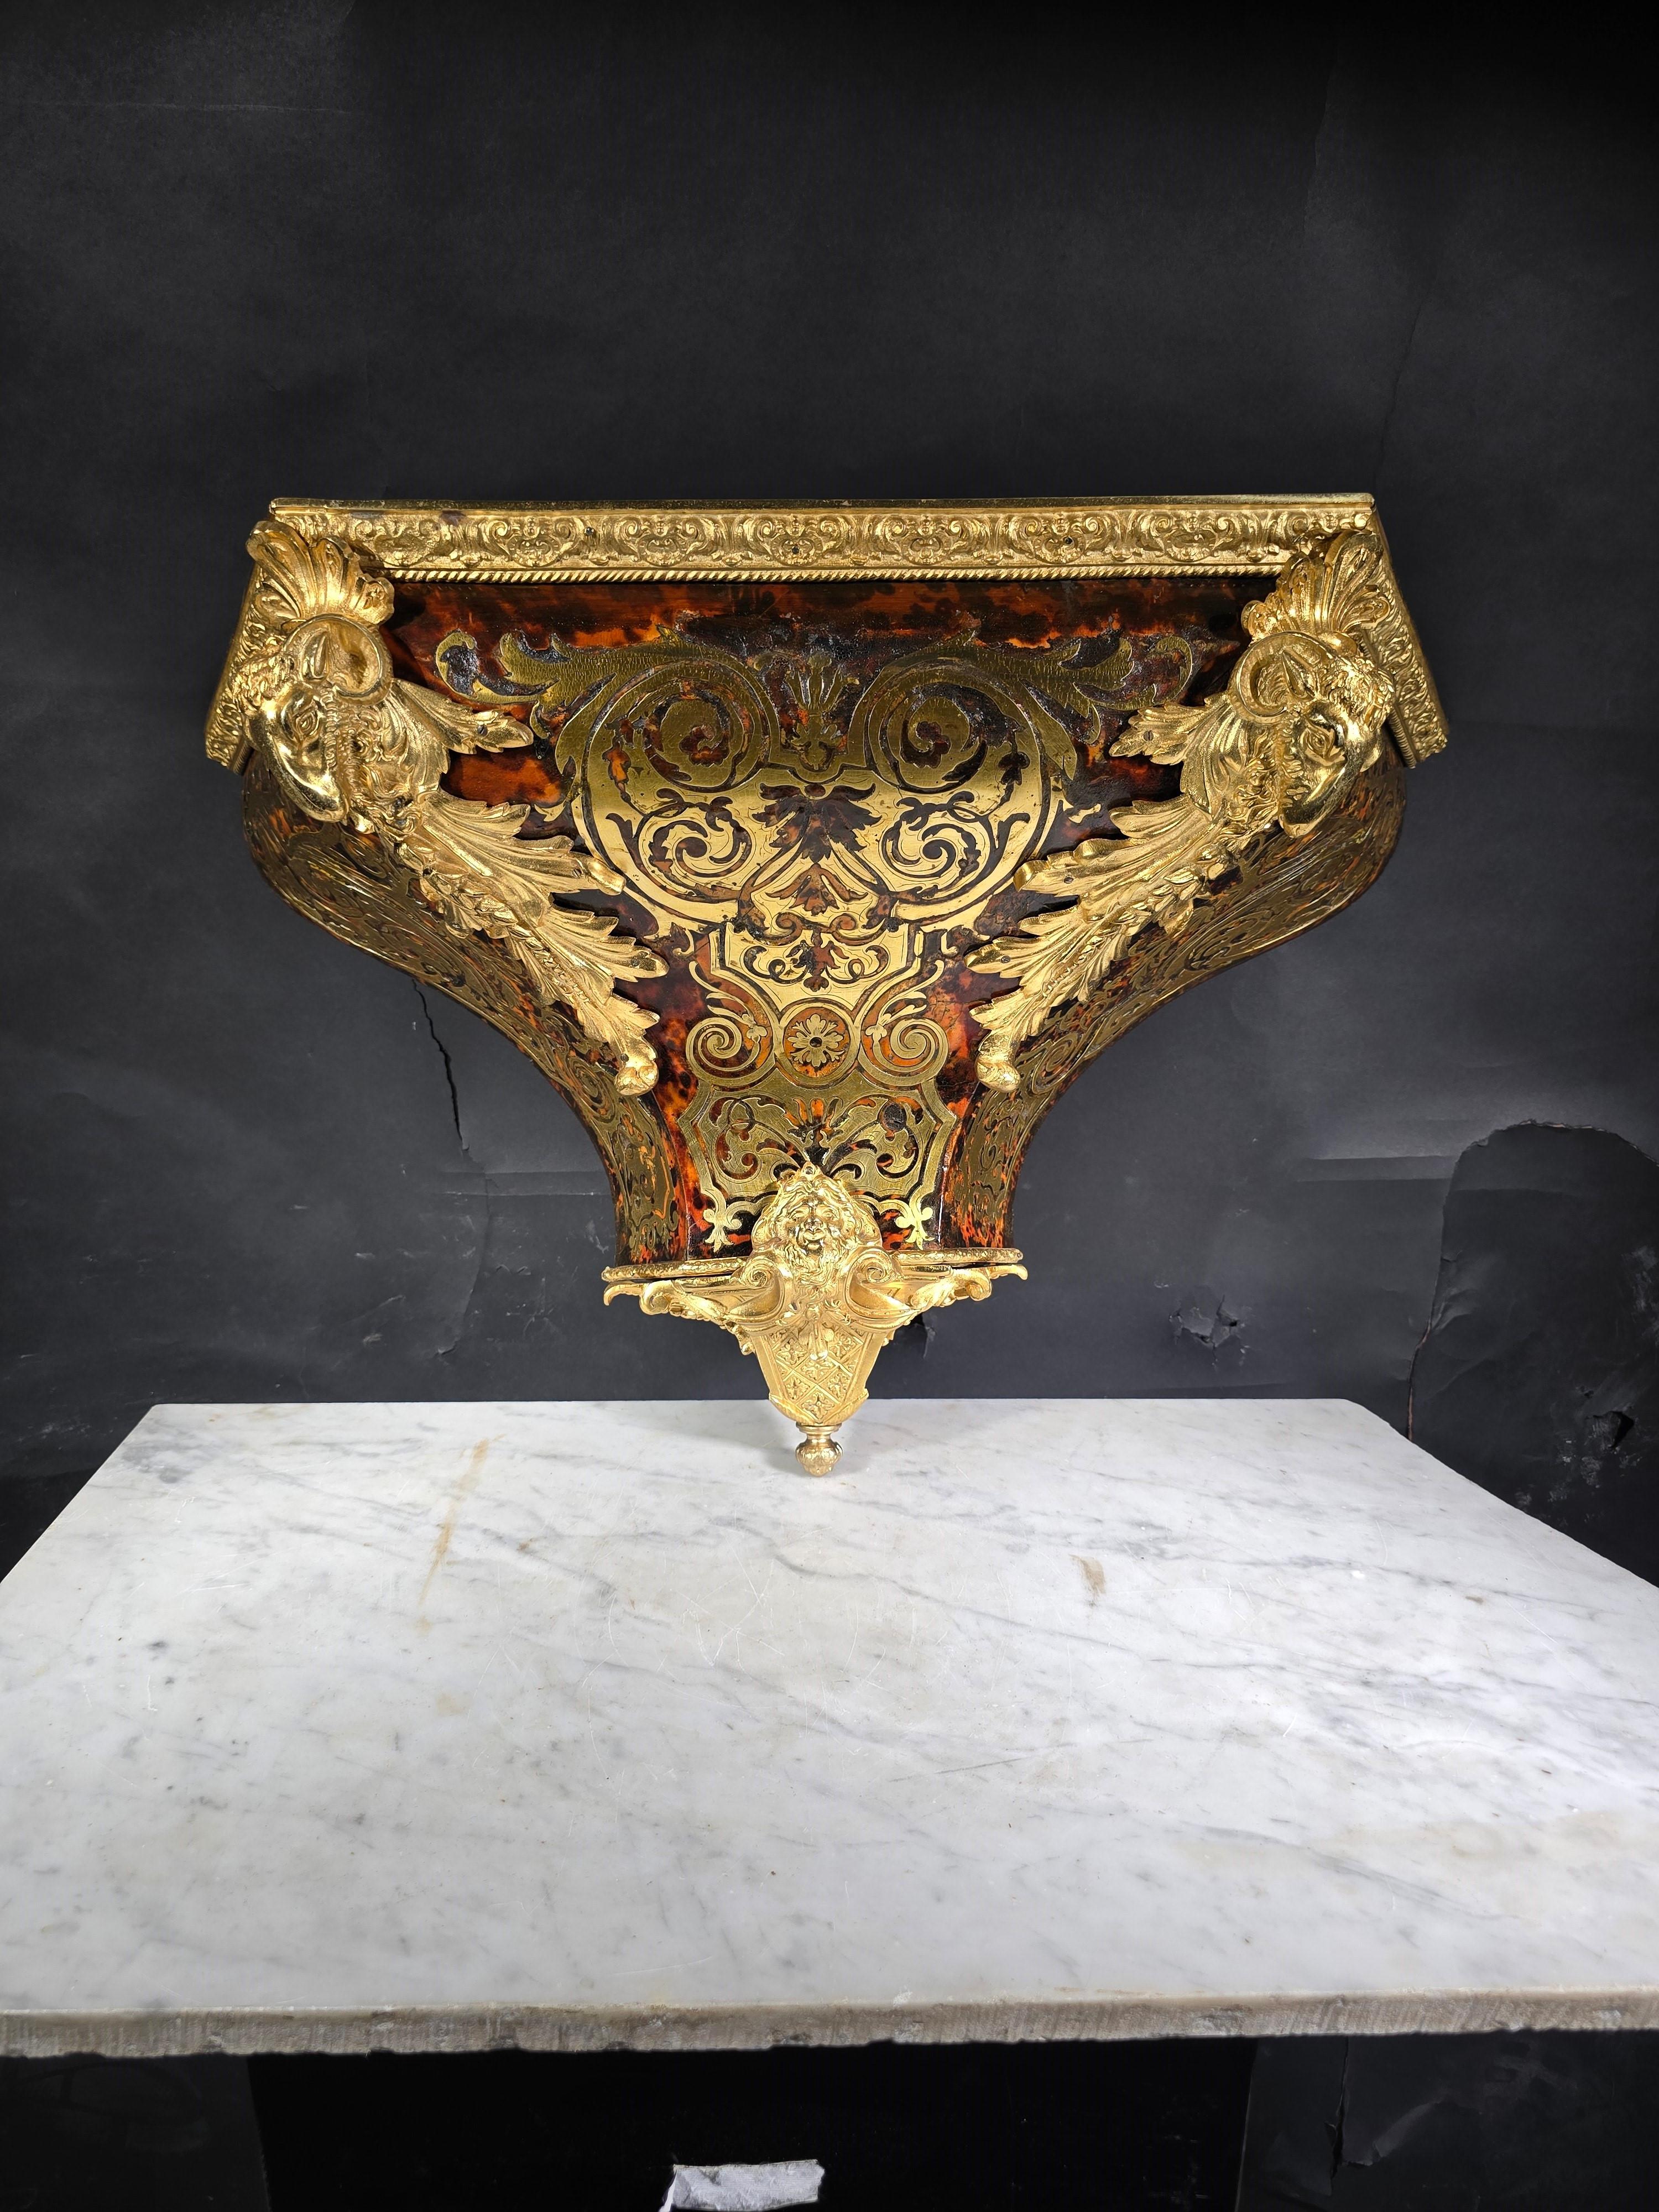 Versetzen Sie sich mit diesem eleganten Wandsockel in das 18. Jahrhundert zurück, ein bemerkenswertes Stück mit Boulle-Marketerie und quecksilbervergoldeten Bronzen. Dieser Sockel verkörpert die Raffinesse und Opulenz der Barockzeit und verleiht